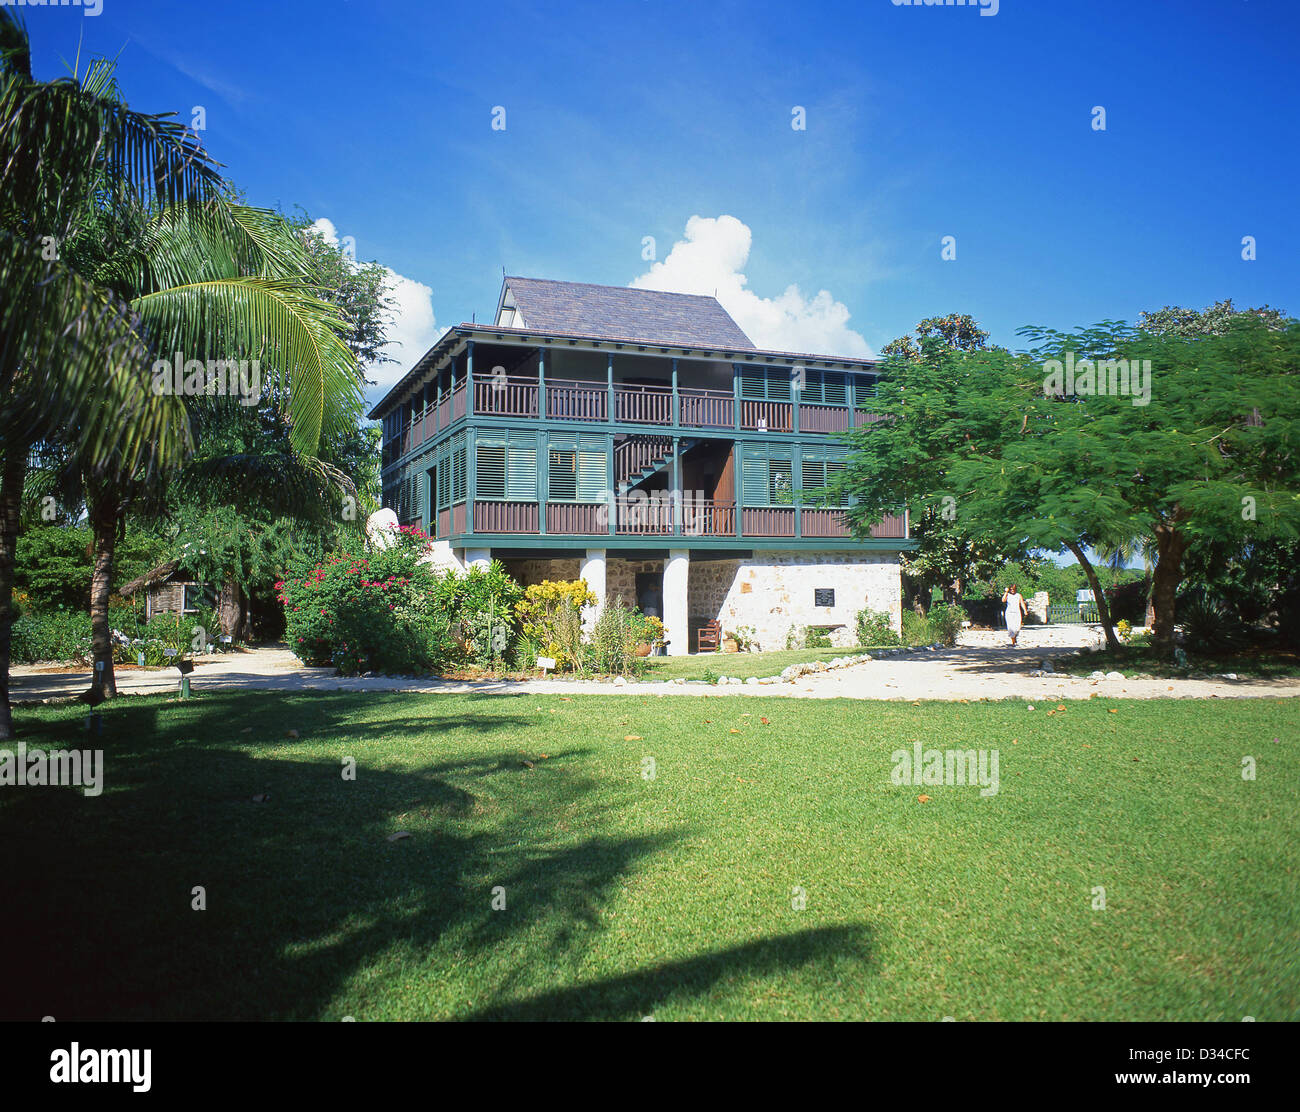 La Grande Chambre à Pedro St James Lieu historique national, Savannah, Grand Cayman, îles Caïmans, Antilles, Caraïbes Banque D'Images